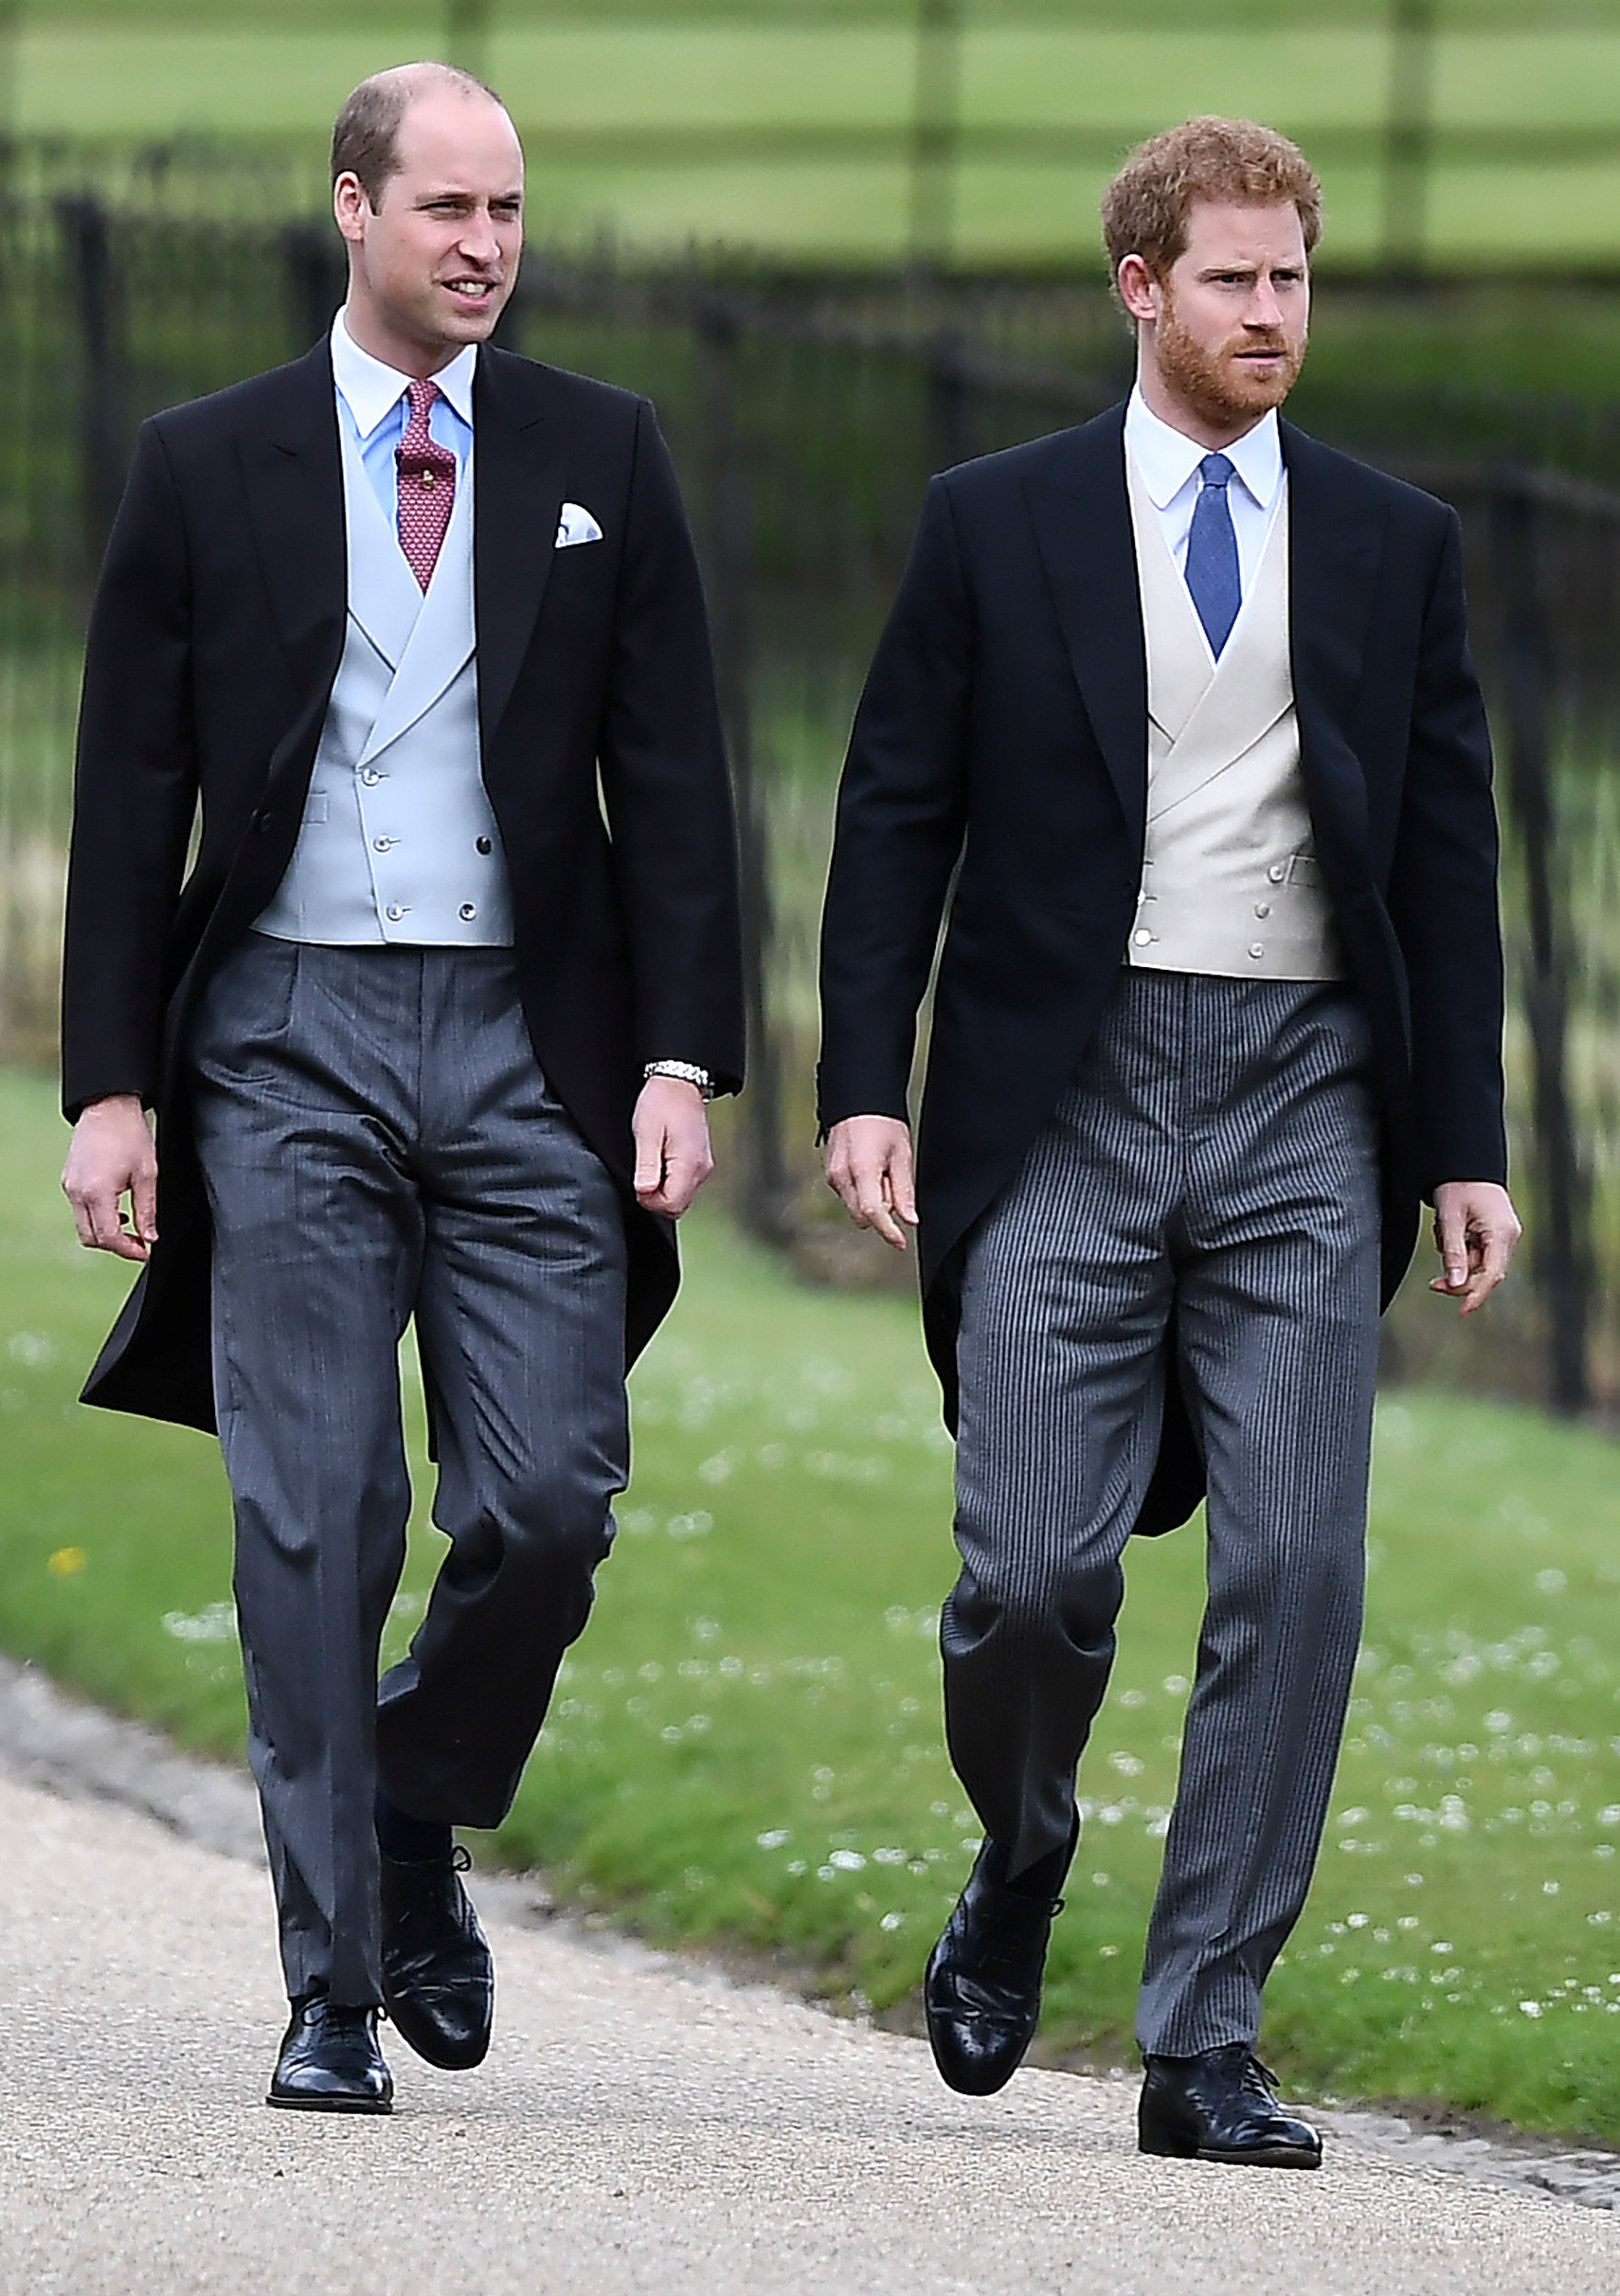 الأمير هارى والأمير وليام يصلان حفل زفاف شقيقة دوقة كامبريدج